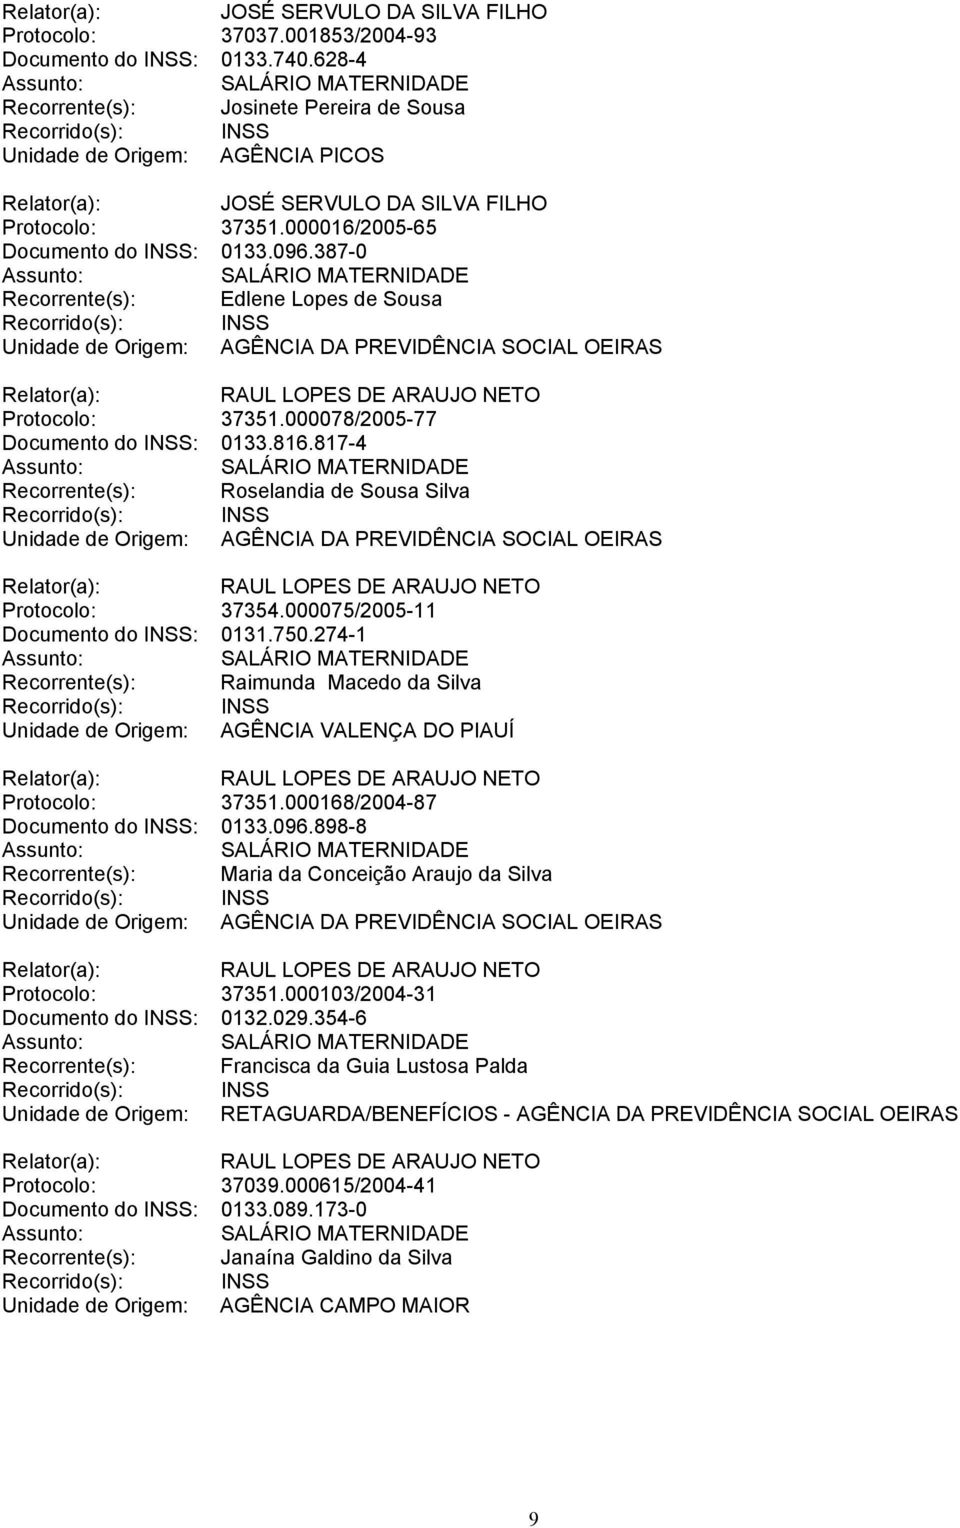 000075/2005-11 Documento do INSS: 0131.750.274-1 Recorrente(s): Raimunda Macedo da Silva Protocolo: 37351.000168/2004-87 Documento do INSS: 0133.096.